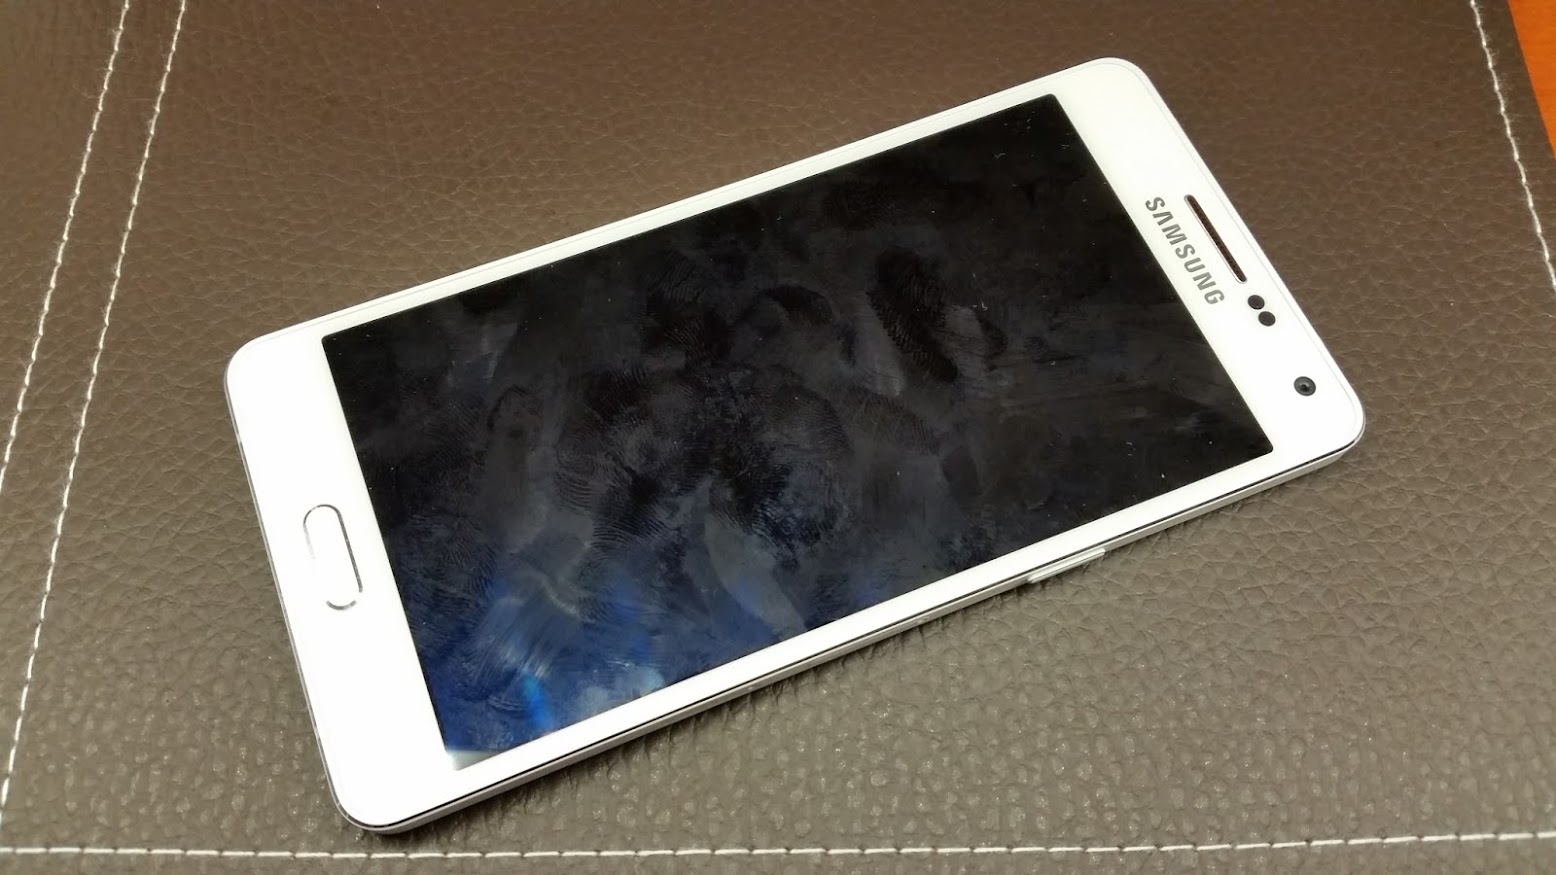 Samsung Galaxy A5 teszt - fémesedünk - Tech2.hu